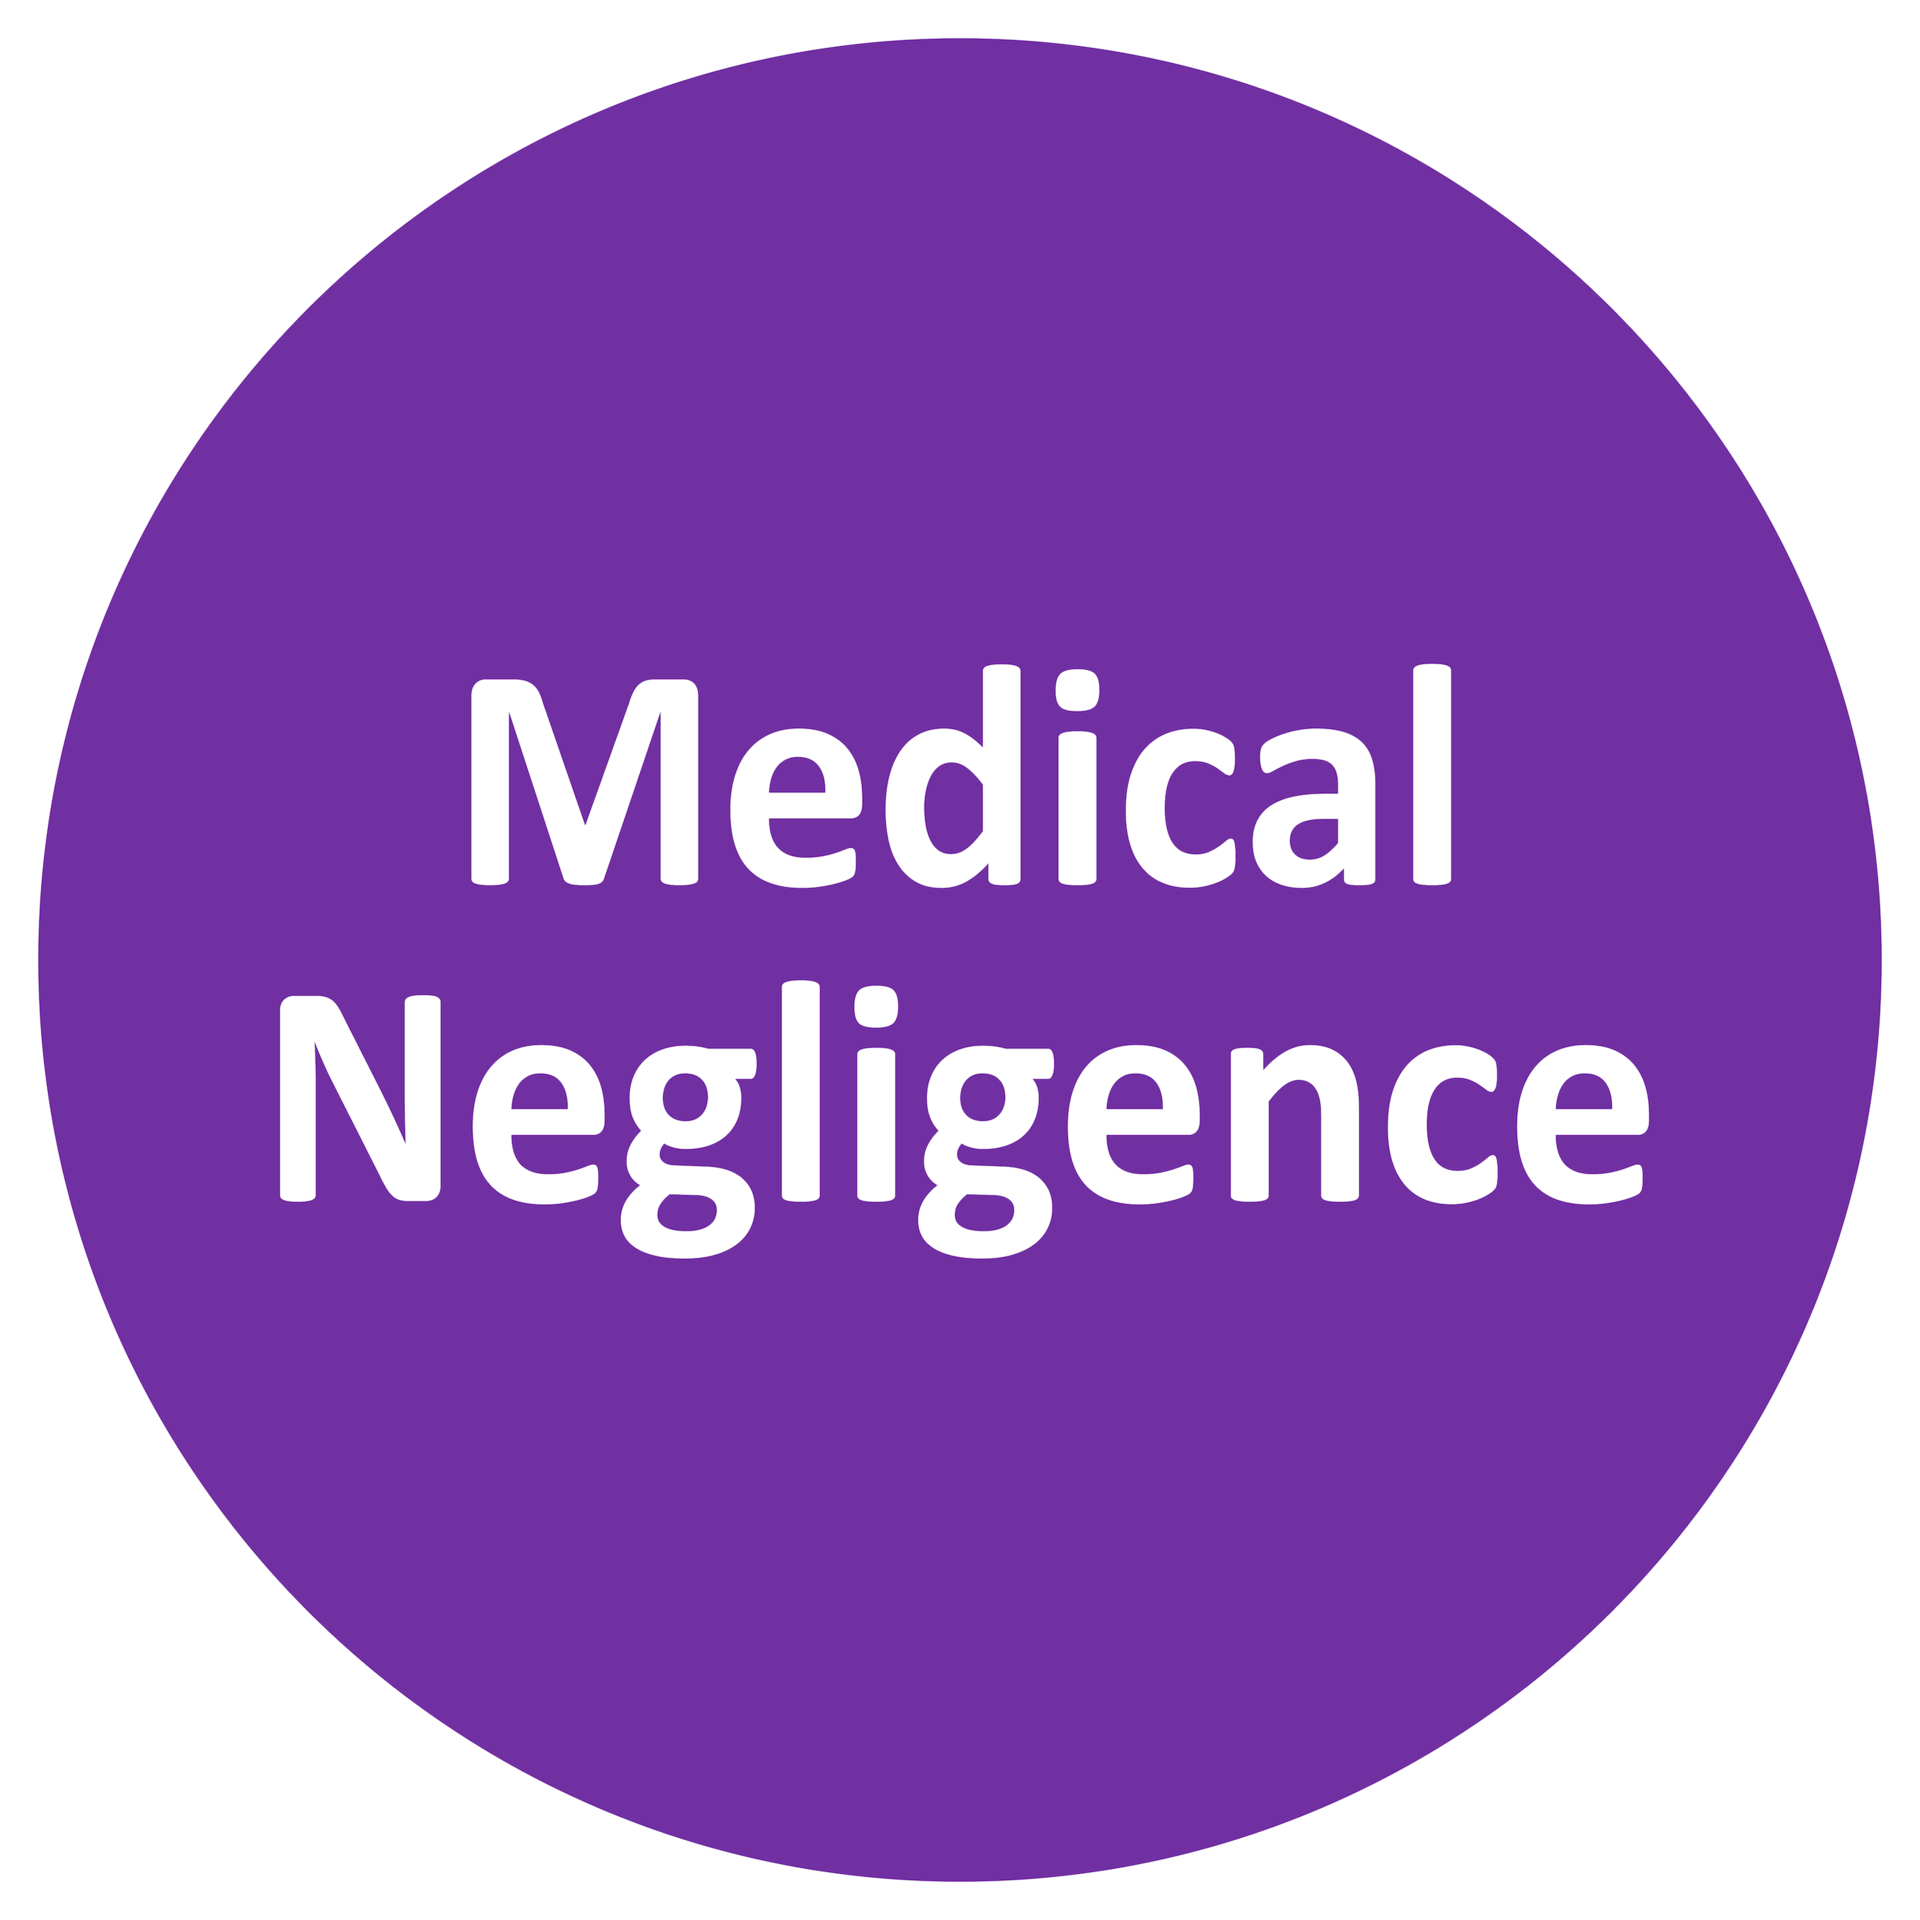 Medical Negligence